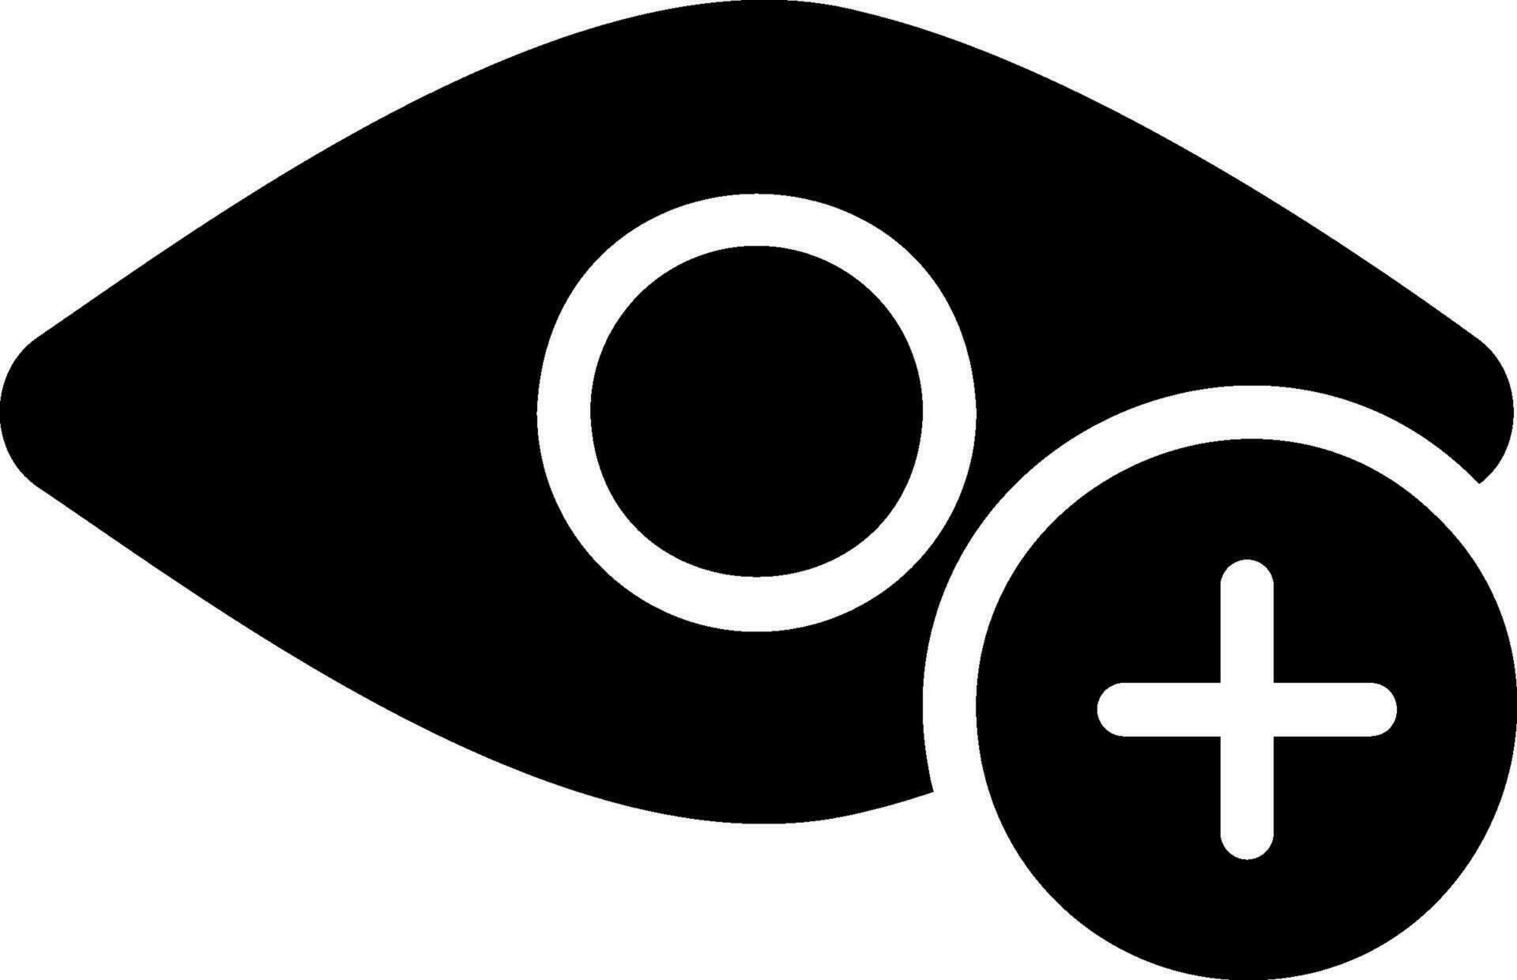 ícone de glifo de olho vetor